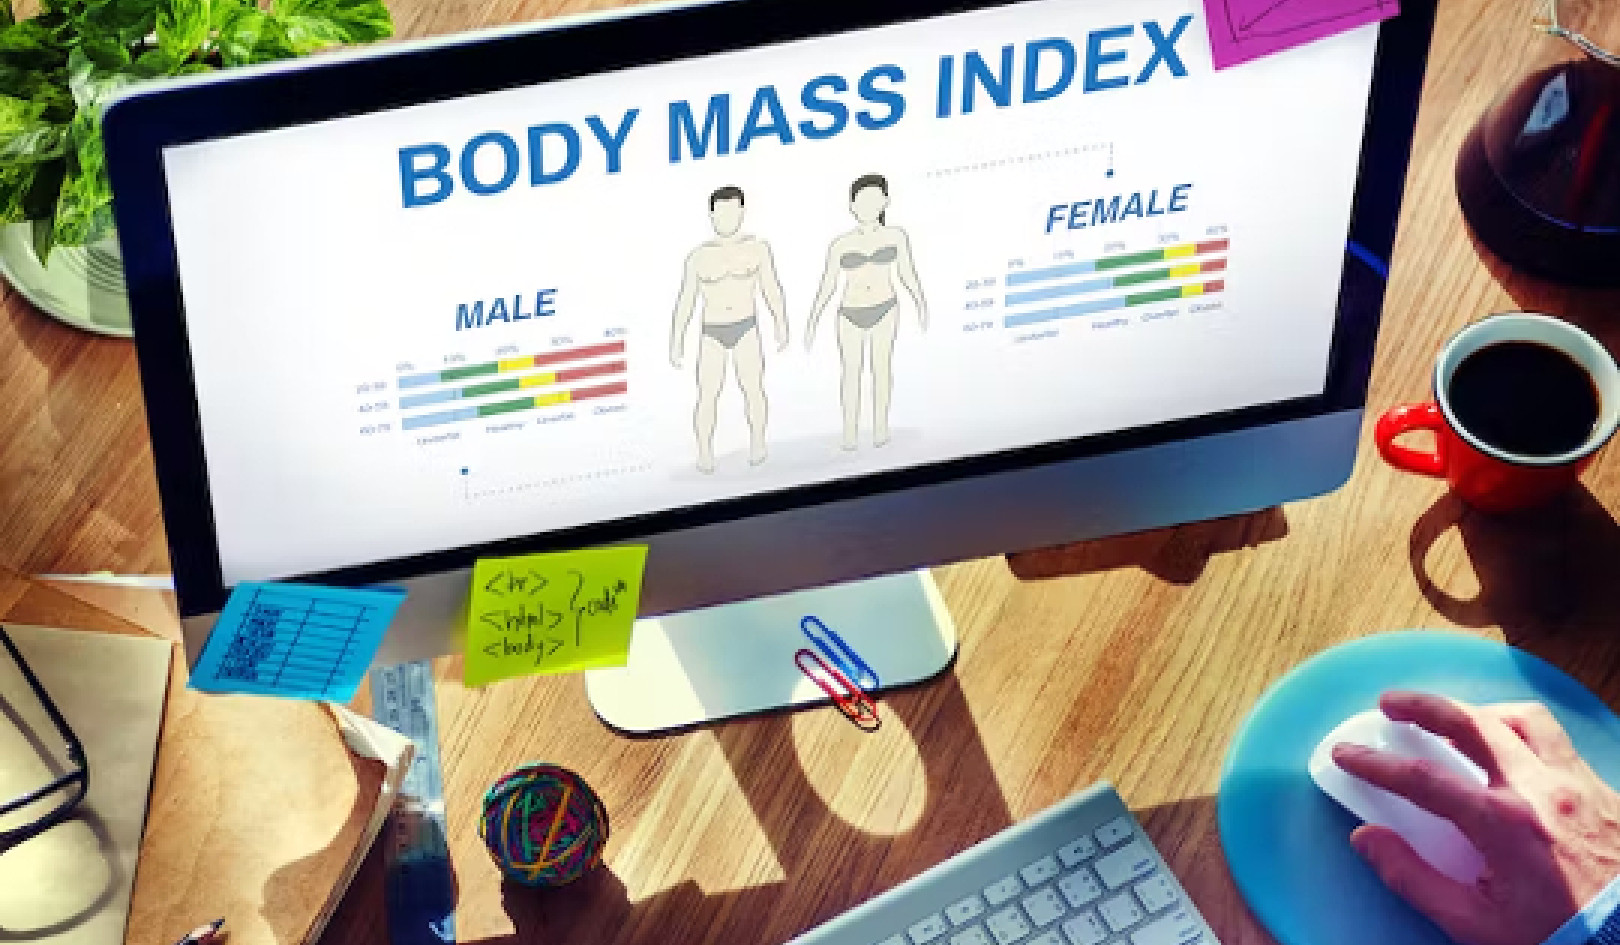 Tại sao các học viên ít dựa vào chỉ số khối cơ thể để đánh giá sức khỏe